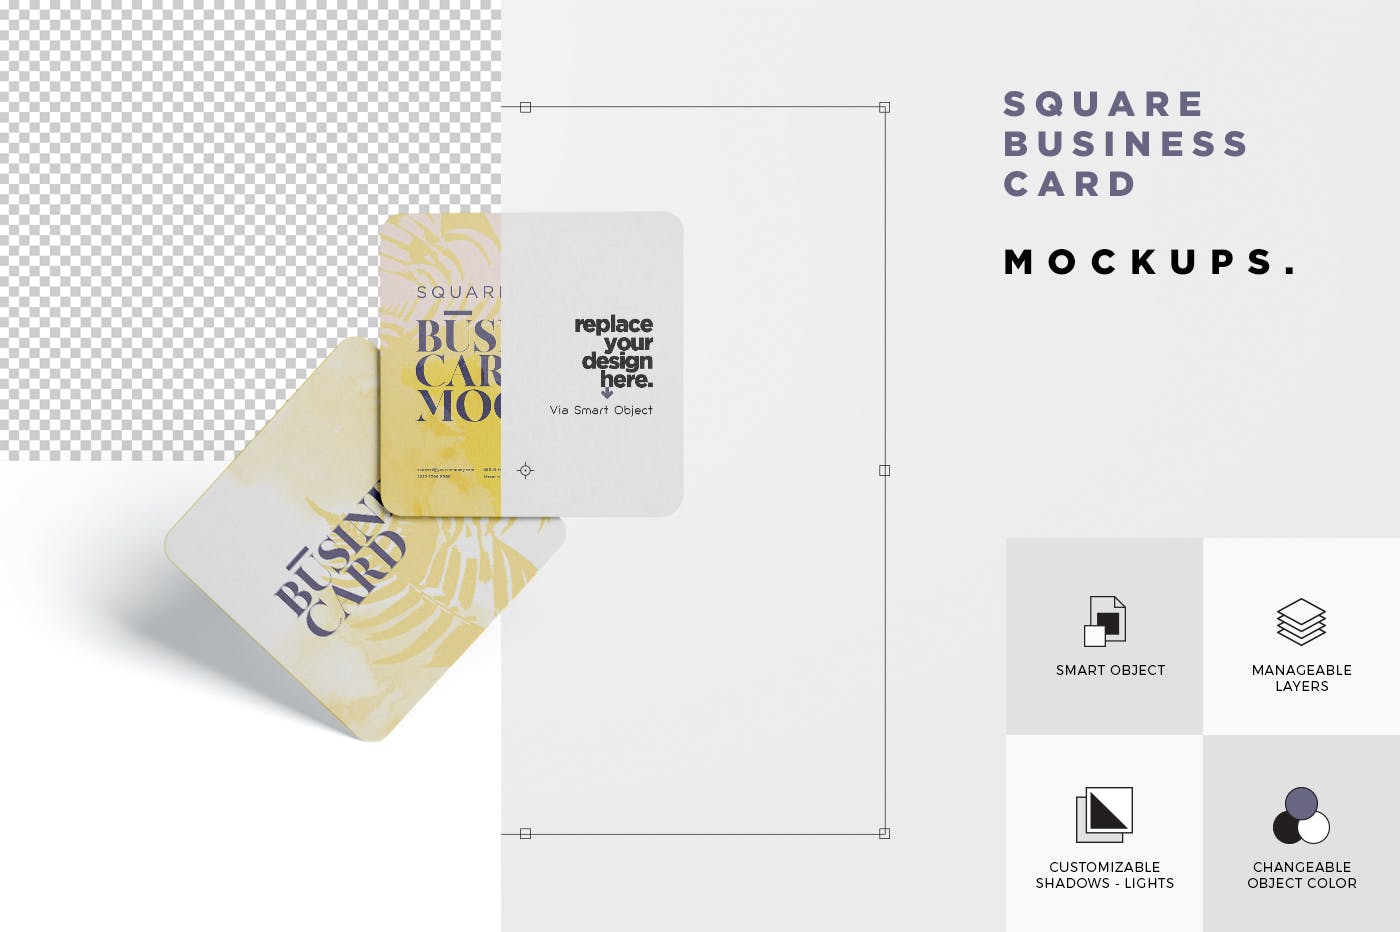 圆角设计风格企业名片效果图蚂蚁素材精选 Business Card Mockup – Square Round Corner插图(5)